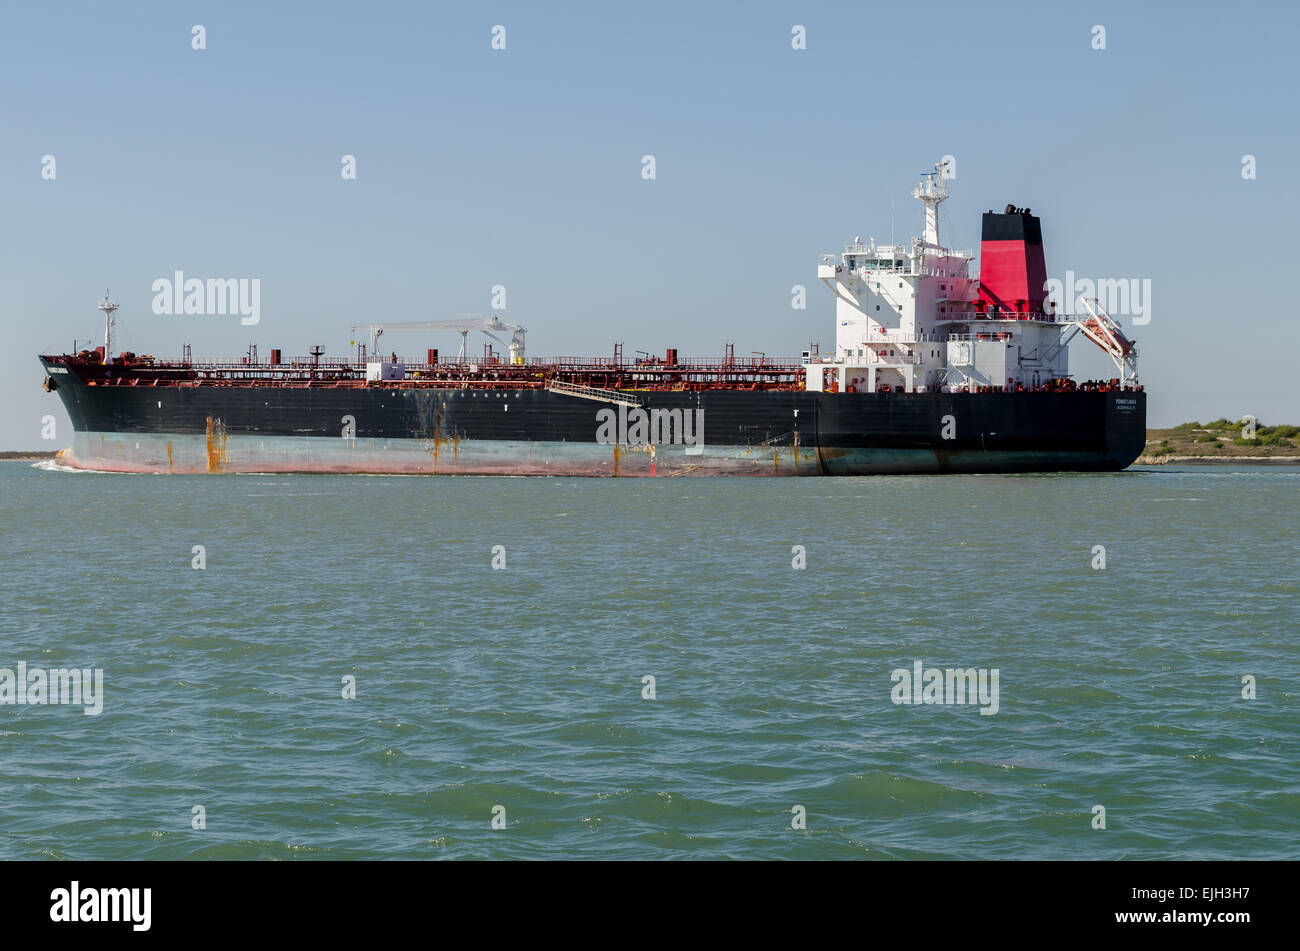 Le pétrolier Virginia, exploité par la société Maritime Crowley, appels entrants, dans le Corpus Christi ship canal. Banque D'Images